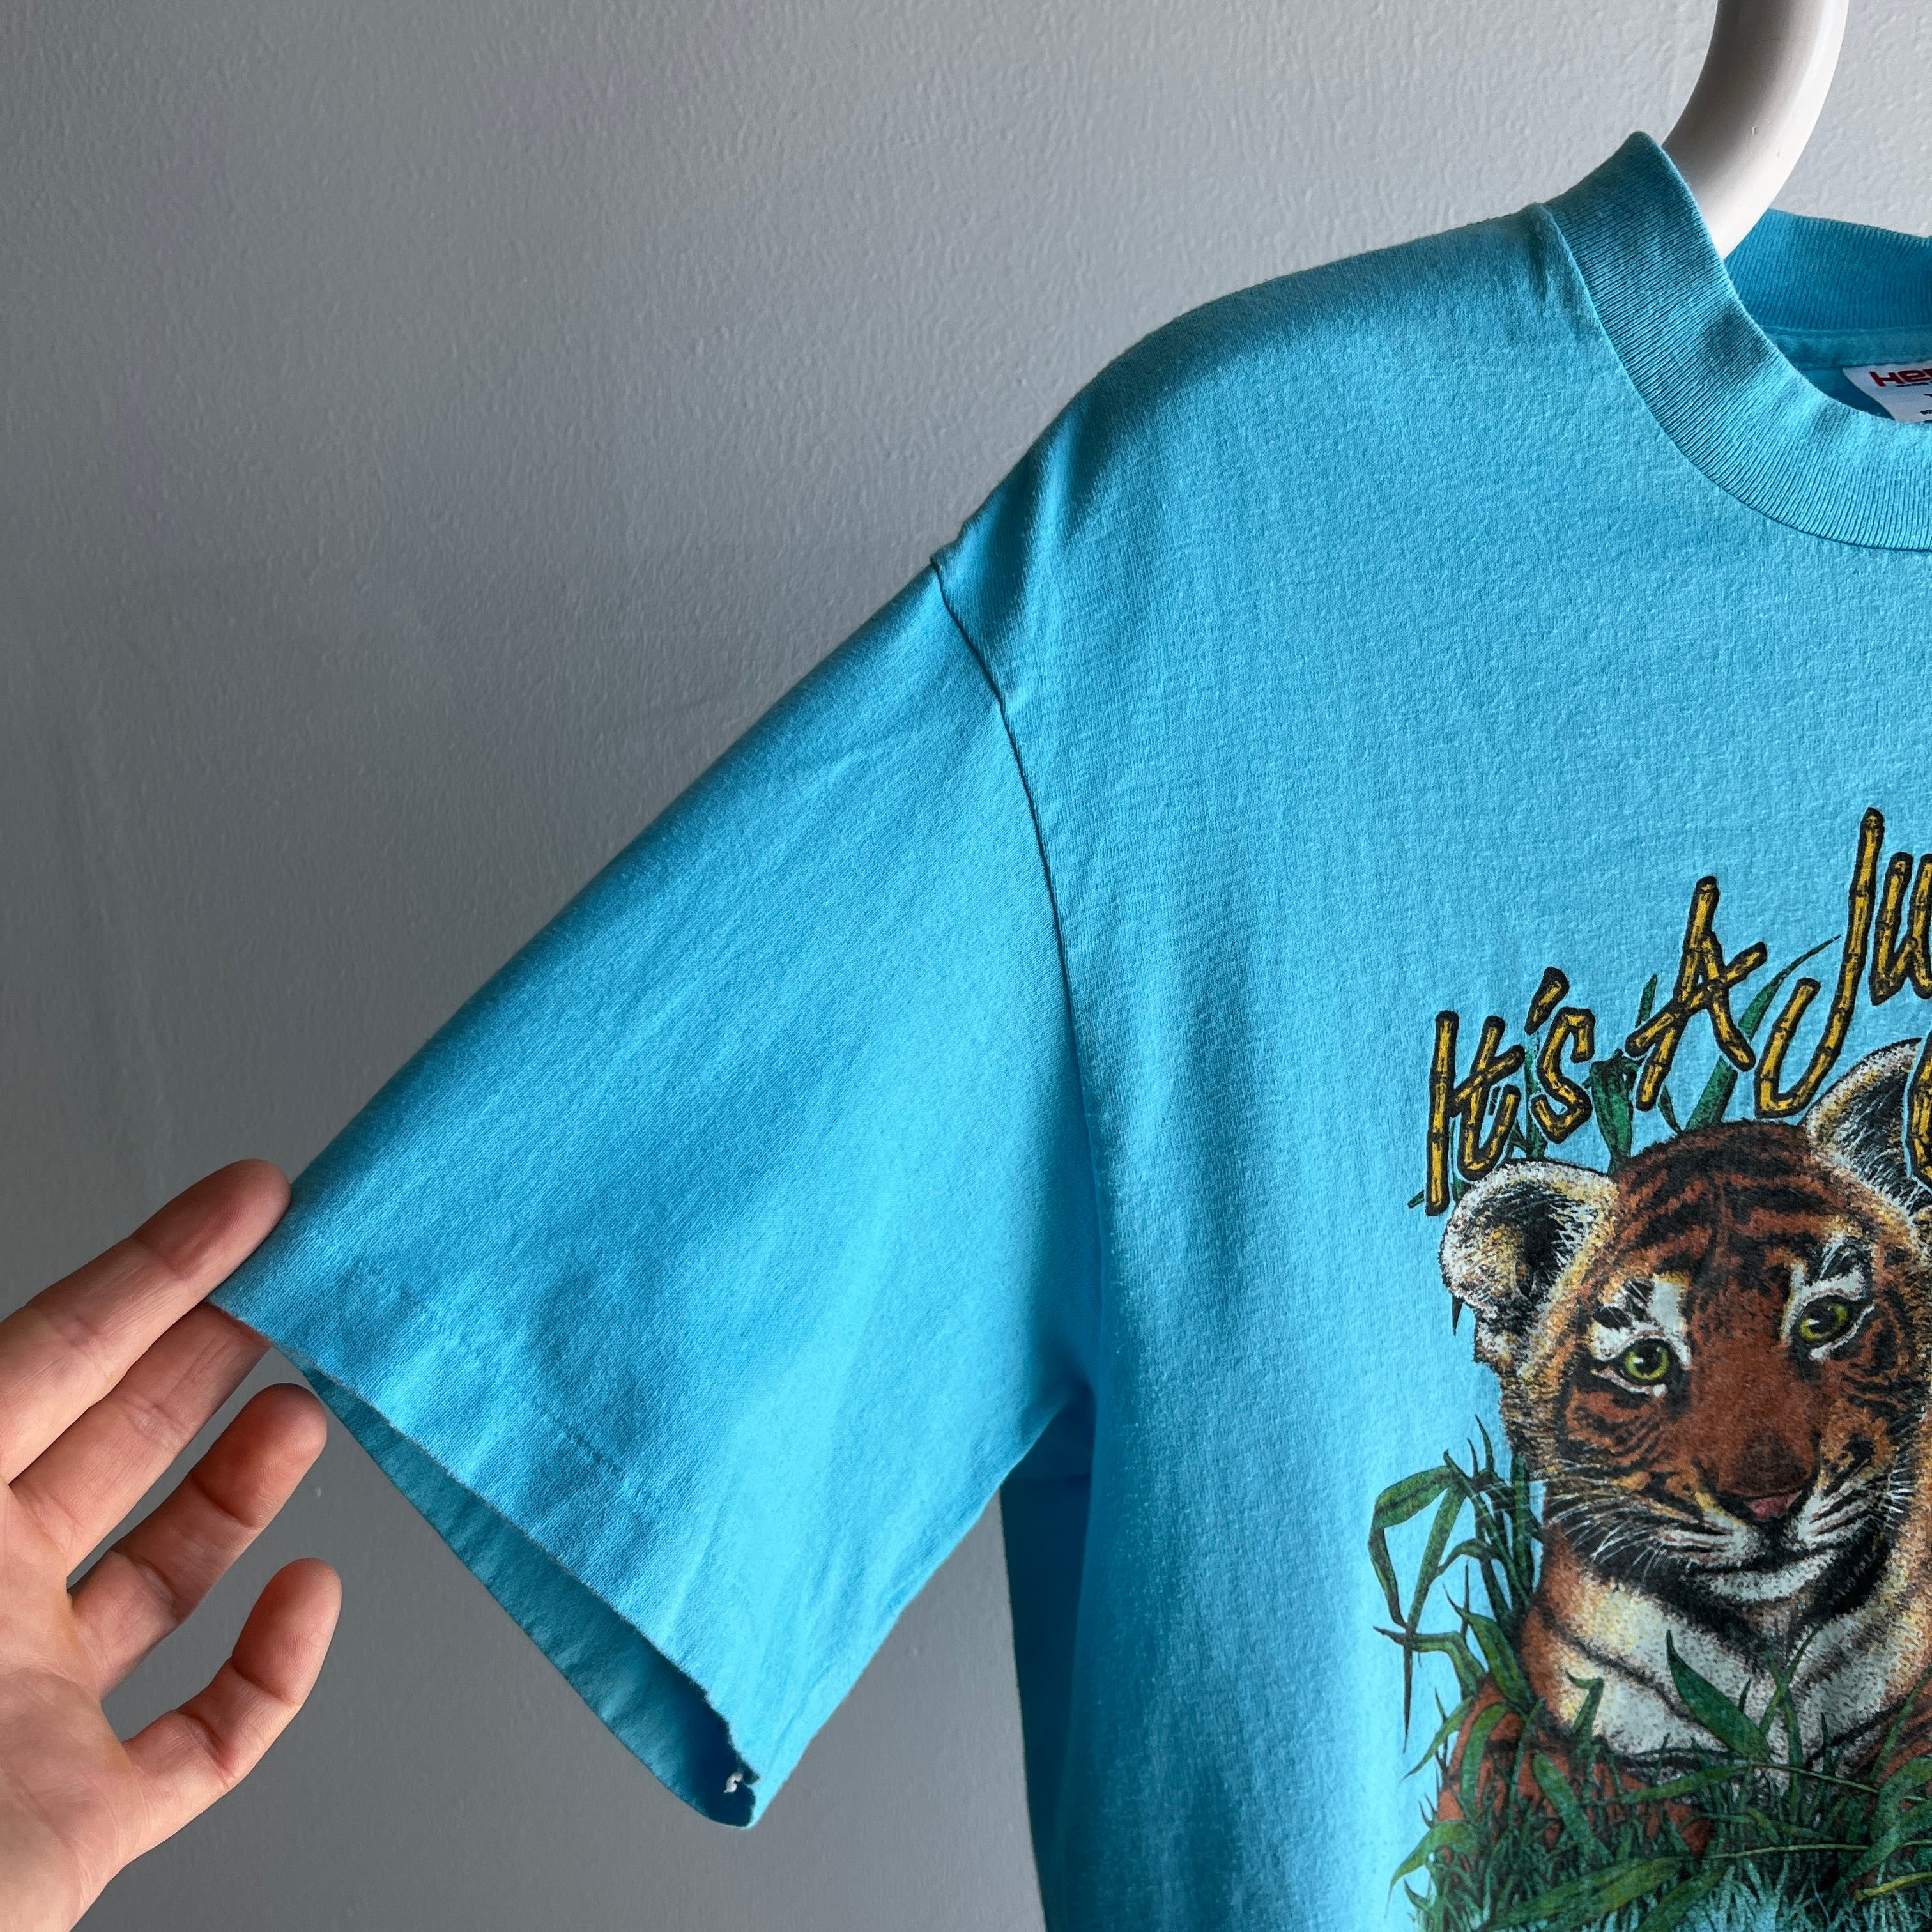 1980/90s Busch Gardens Kitty Cat T-Shirt